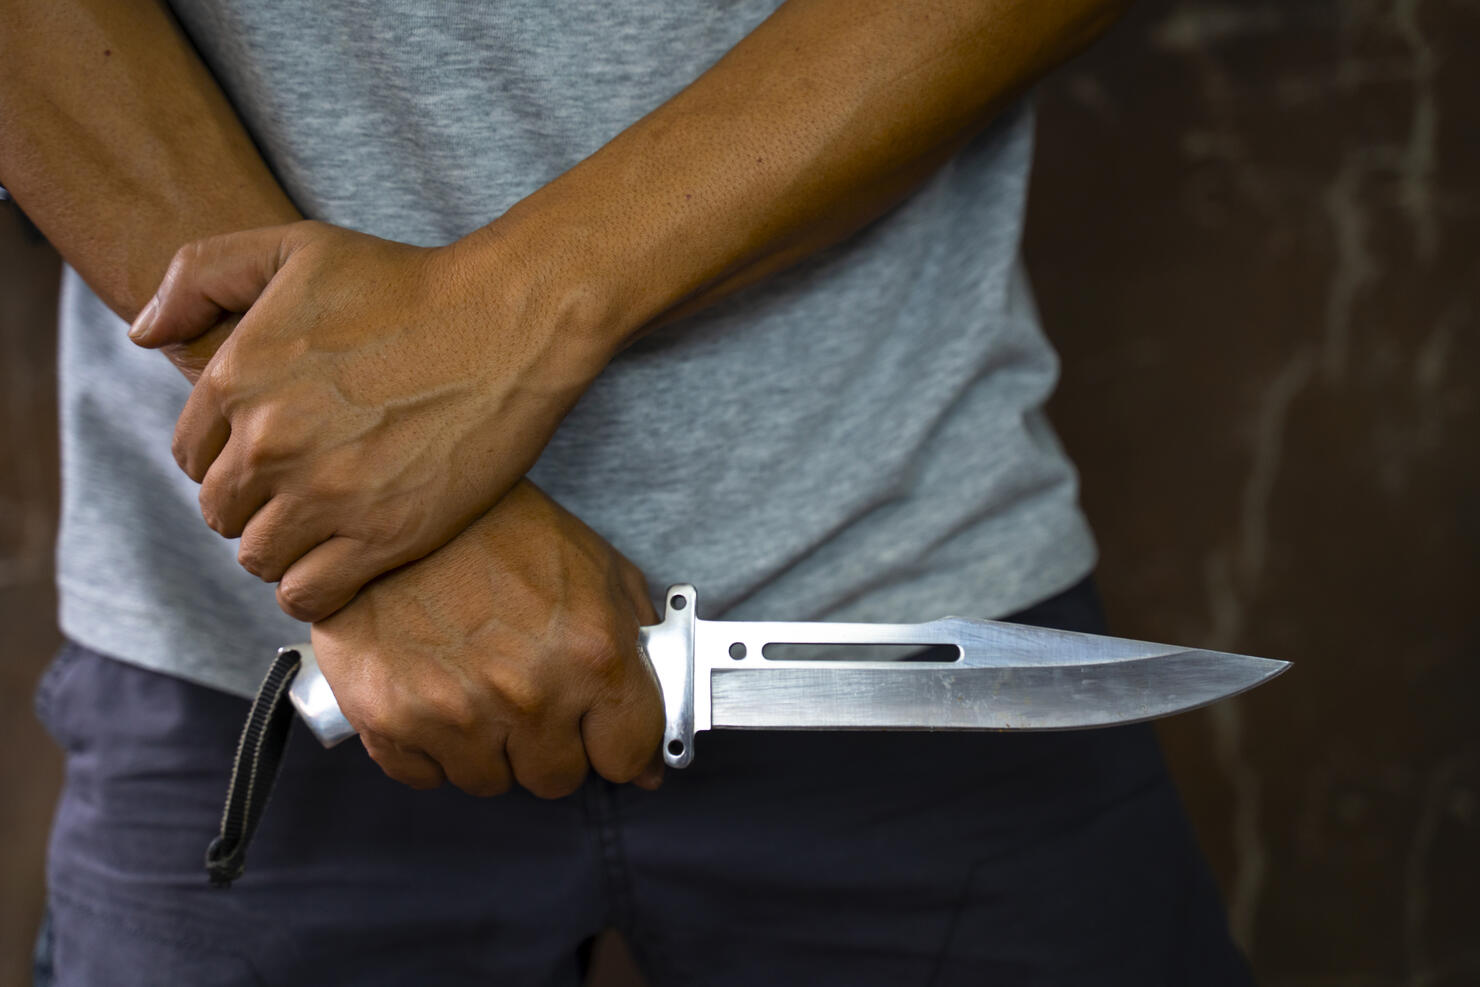 Criminal or bandit holding a knife.